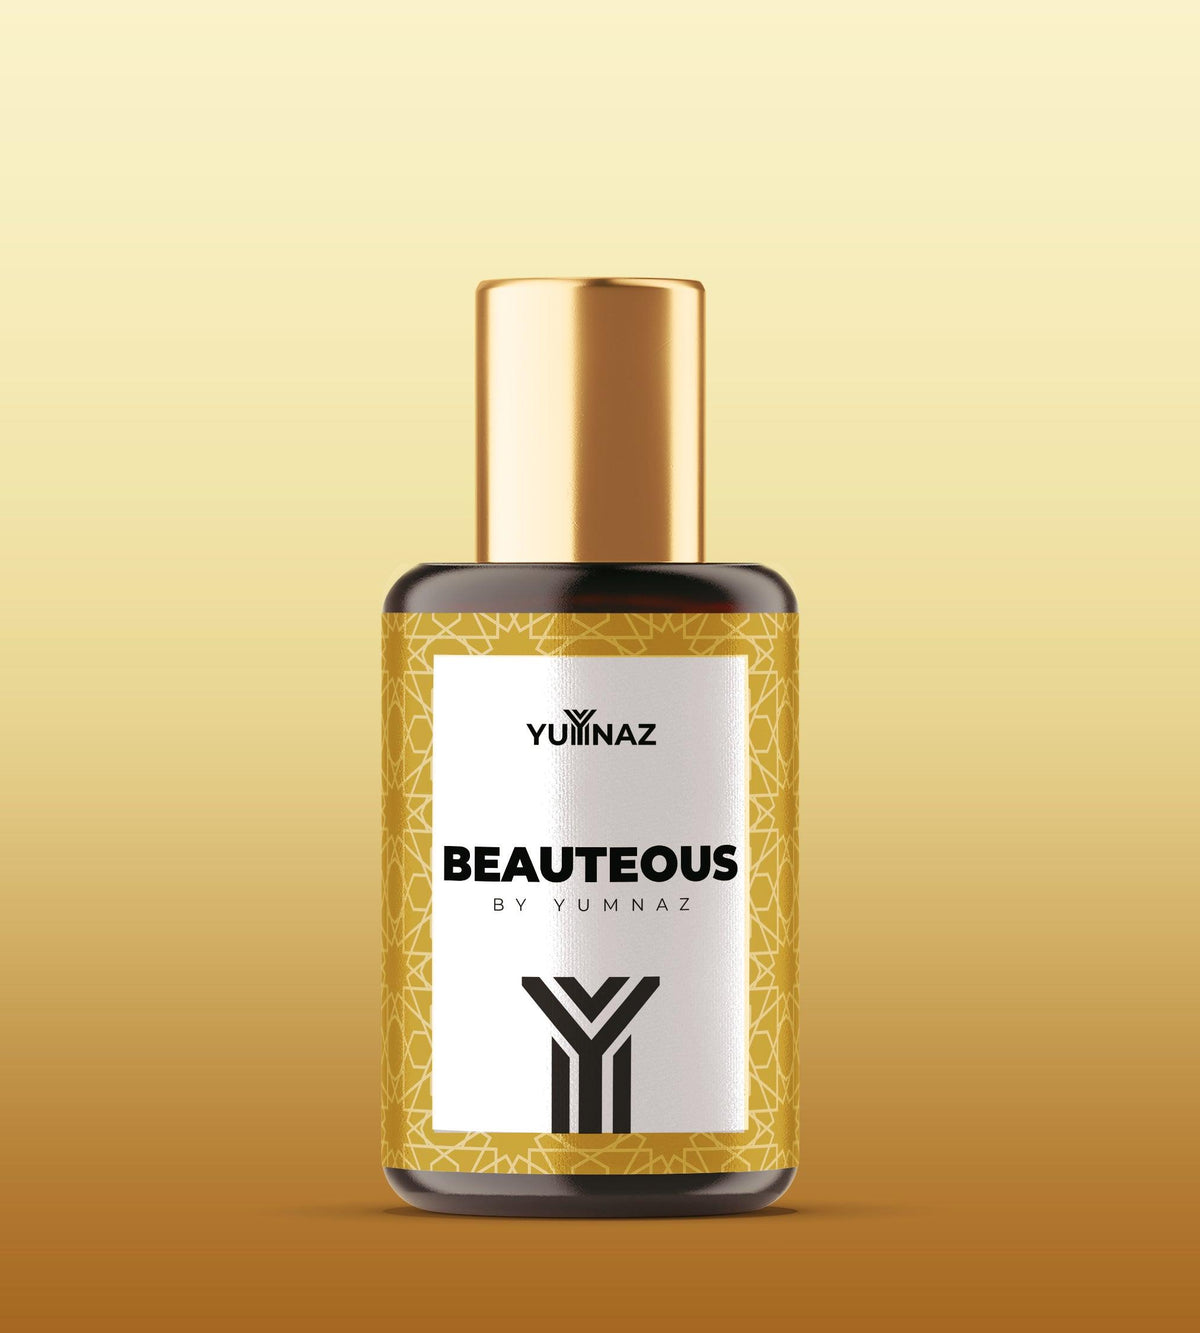 Beauteous by Yumnaz ‚Äì Impression of victoria secret bombshell - Yumnaz